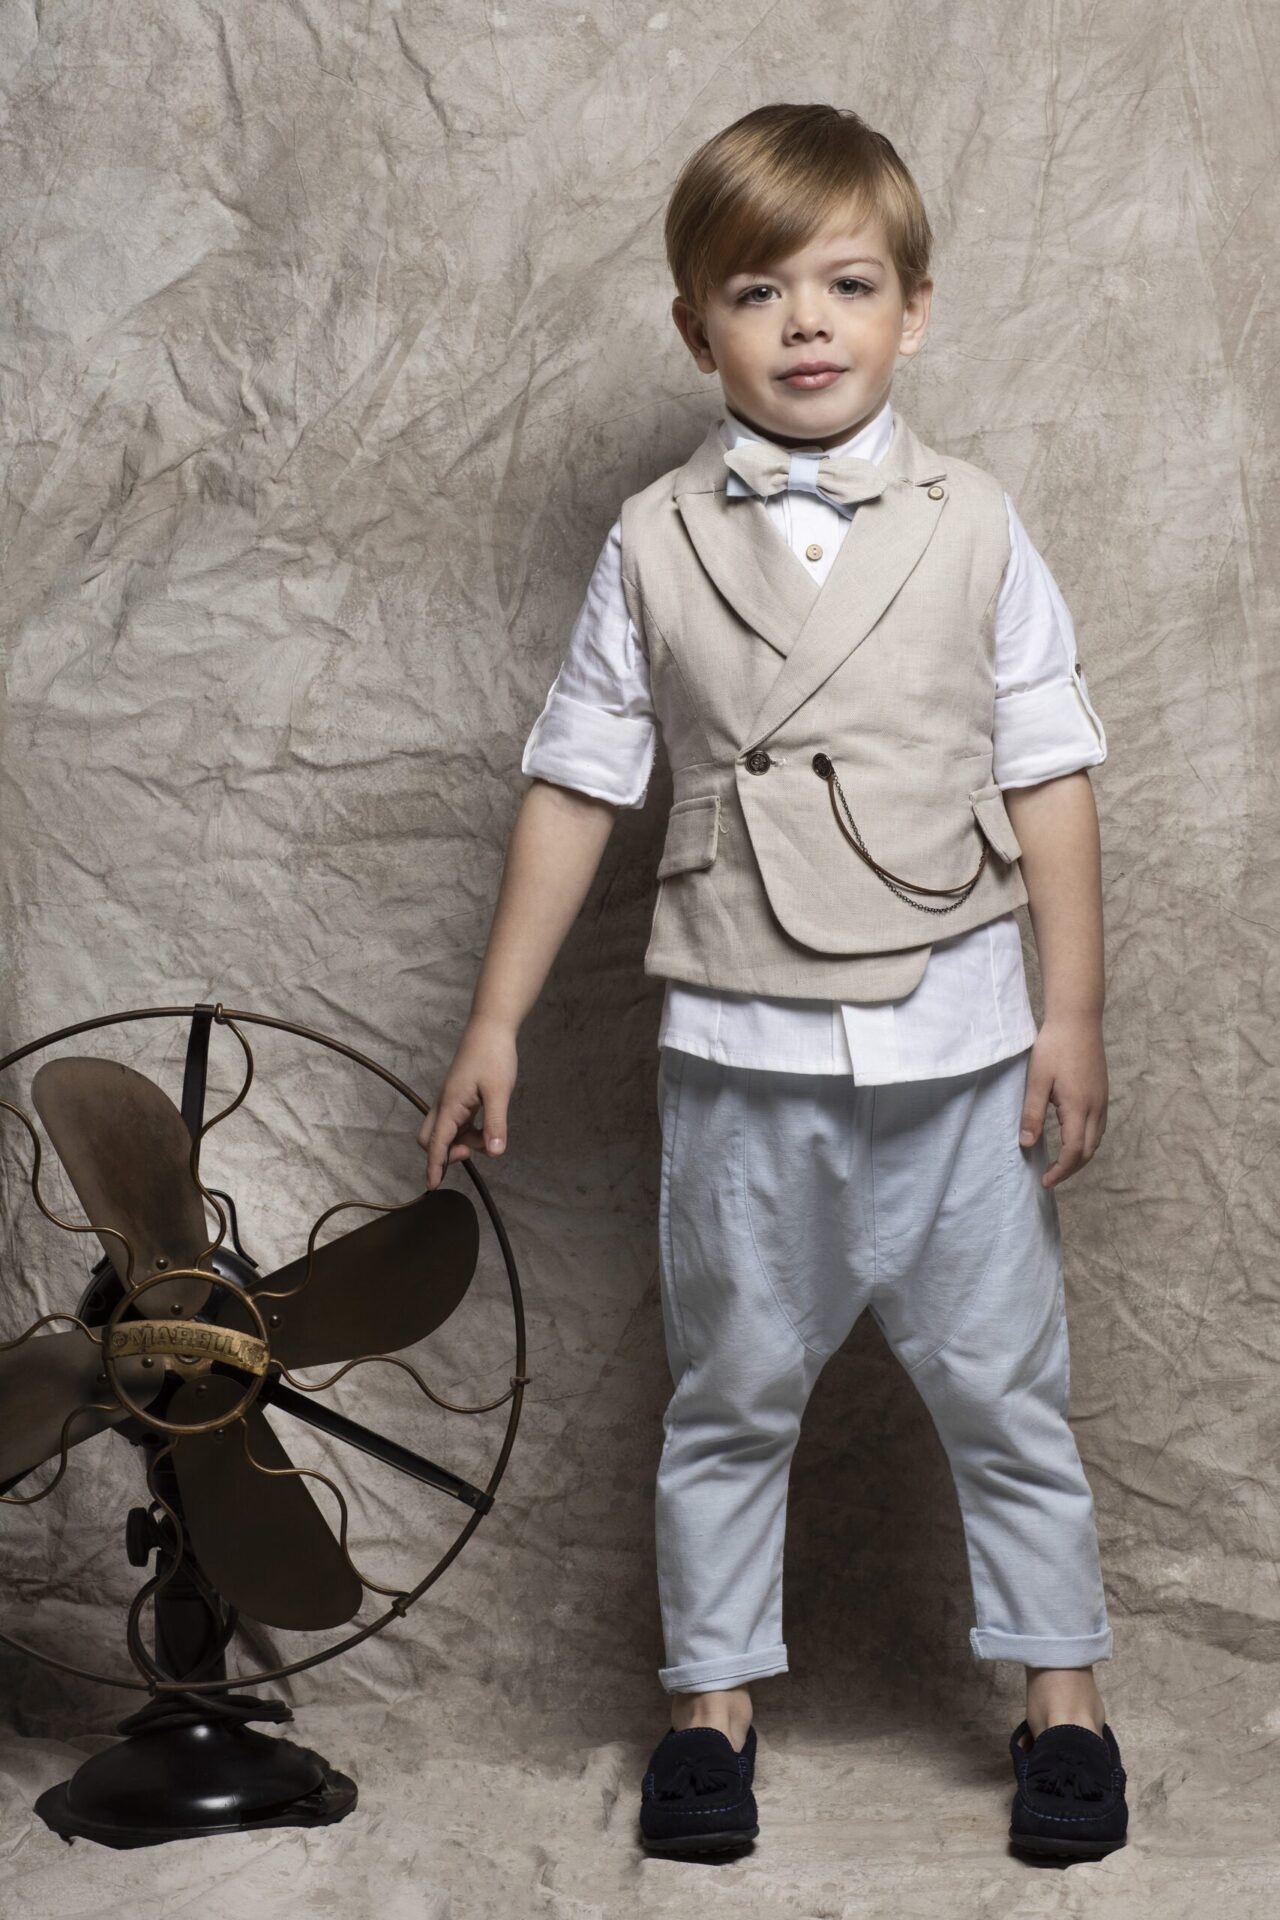 βαπτιστικά ρούχα αγόρι ιωάννα τούνη κουστούμι γιλέκο baby bloom : 1